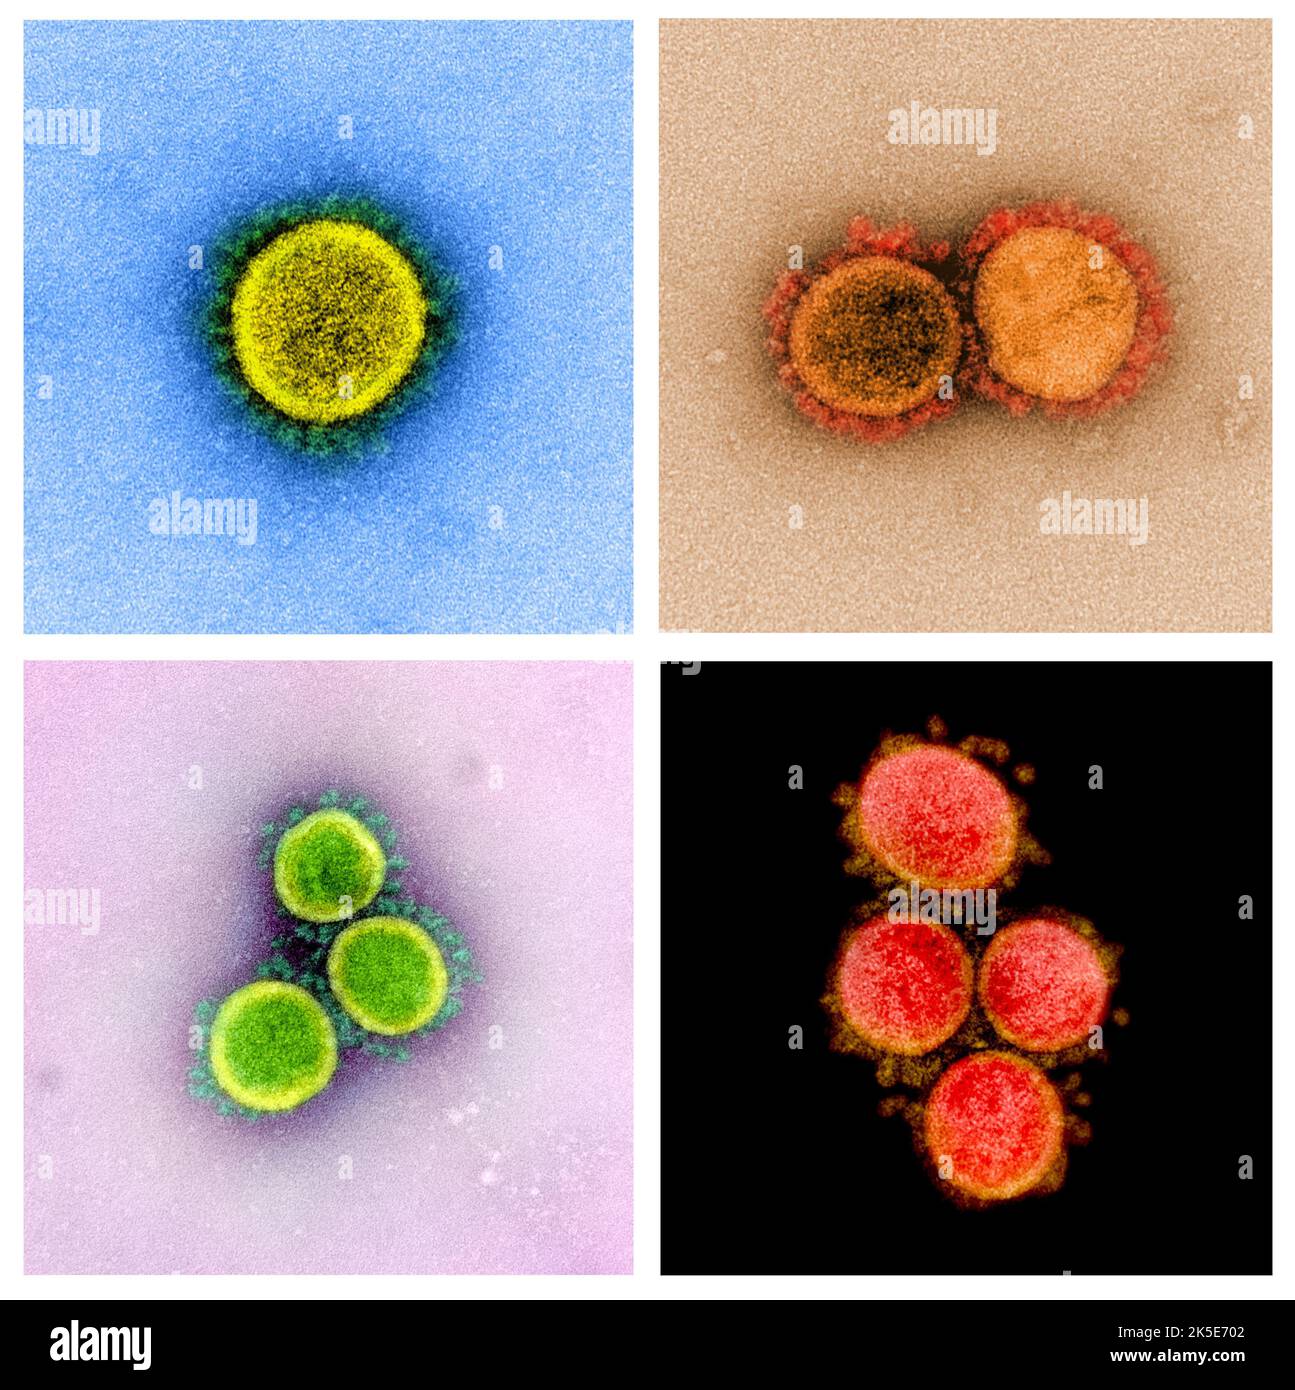 Un composito di immagini del romanzo Coronavirus SARS-COV-2. Micrografia elettronica a trasmissione di particelle e particelle di virus SARS-COV-2, isolate da un paziente. Una versione composita ottimizzata e migliorata di quattro immagini a scansione di micrografia elettronica, Credit: NIAID Foto Stock